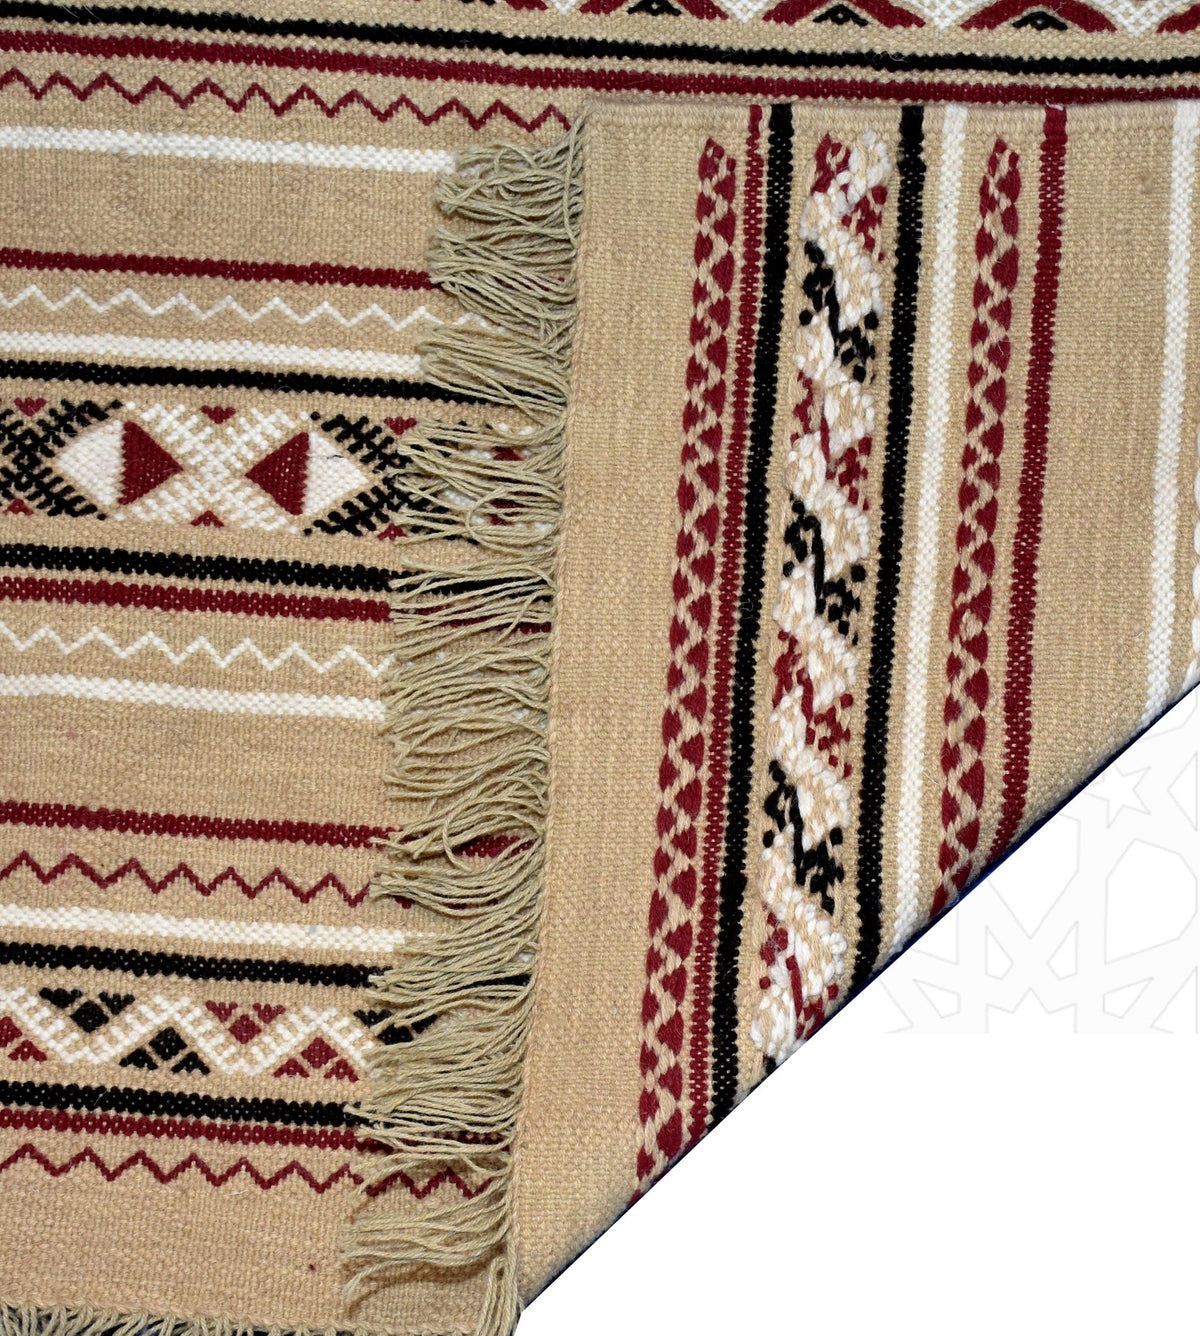 6x4 Vintage Moroccan Kilim Handwoven Rug Moroccan Rug 